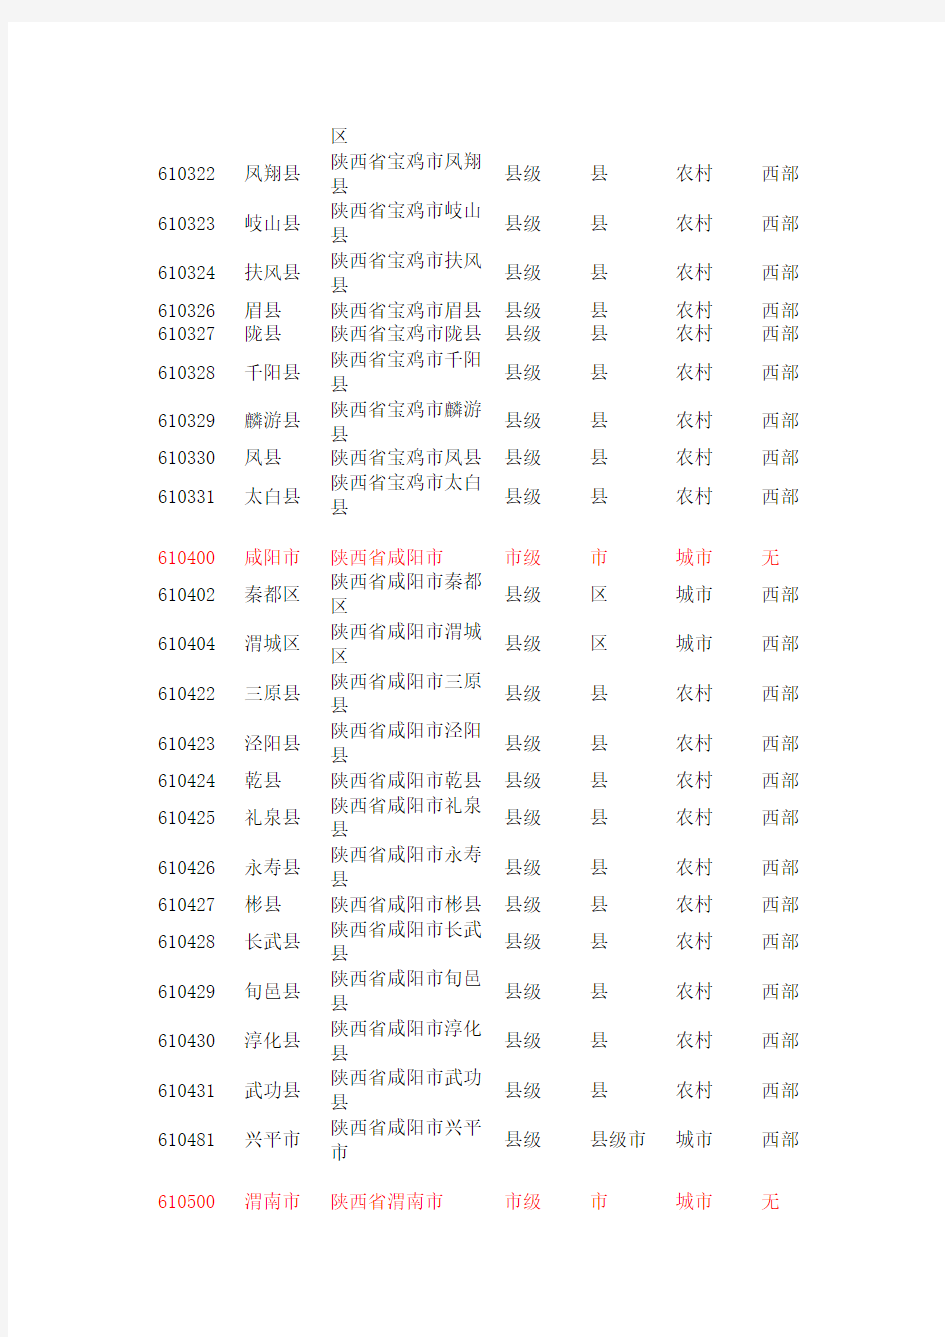 陕西省行政区划代码(107)